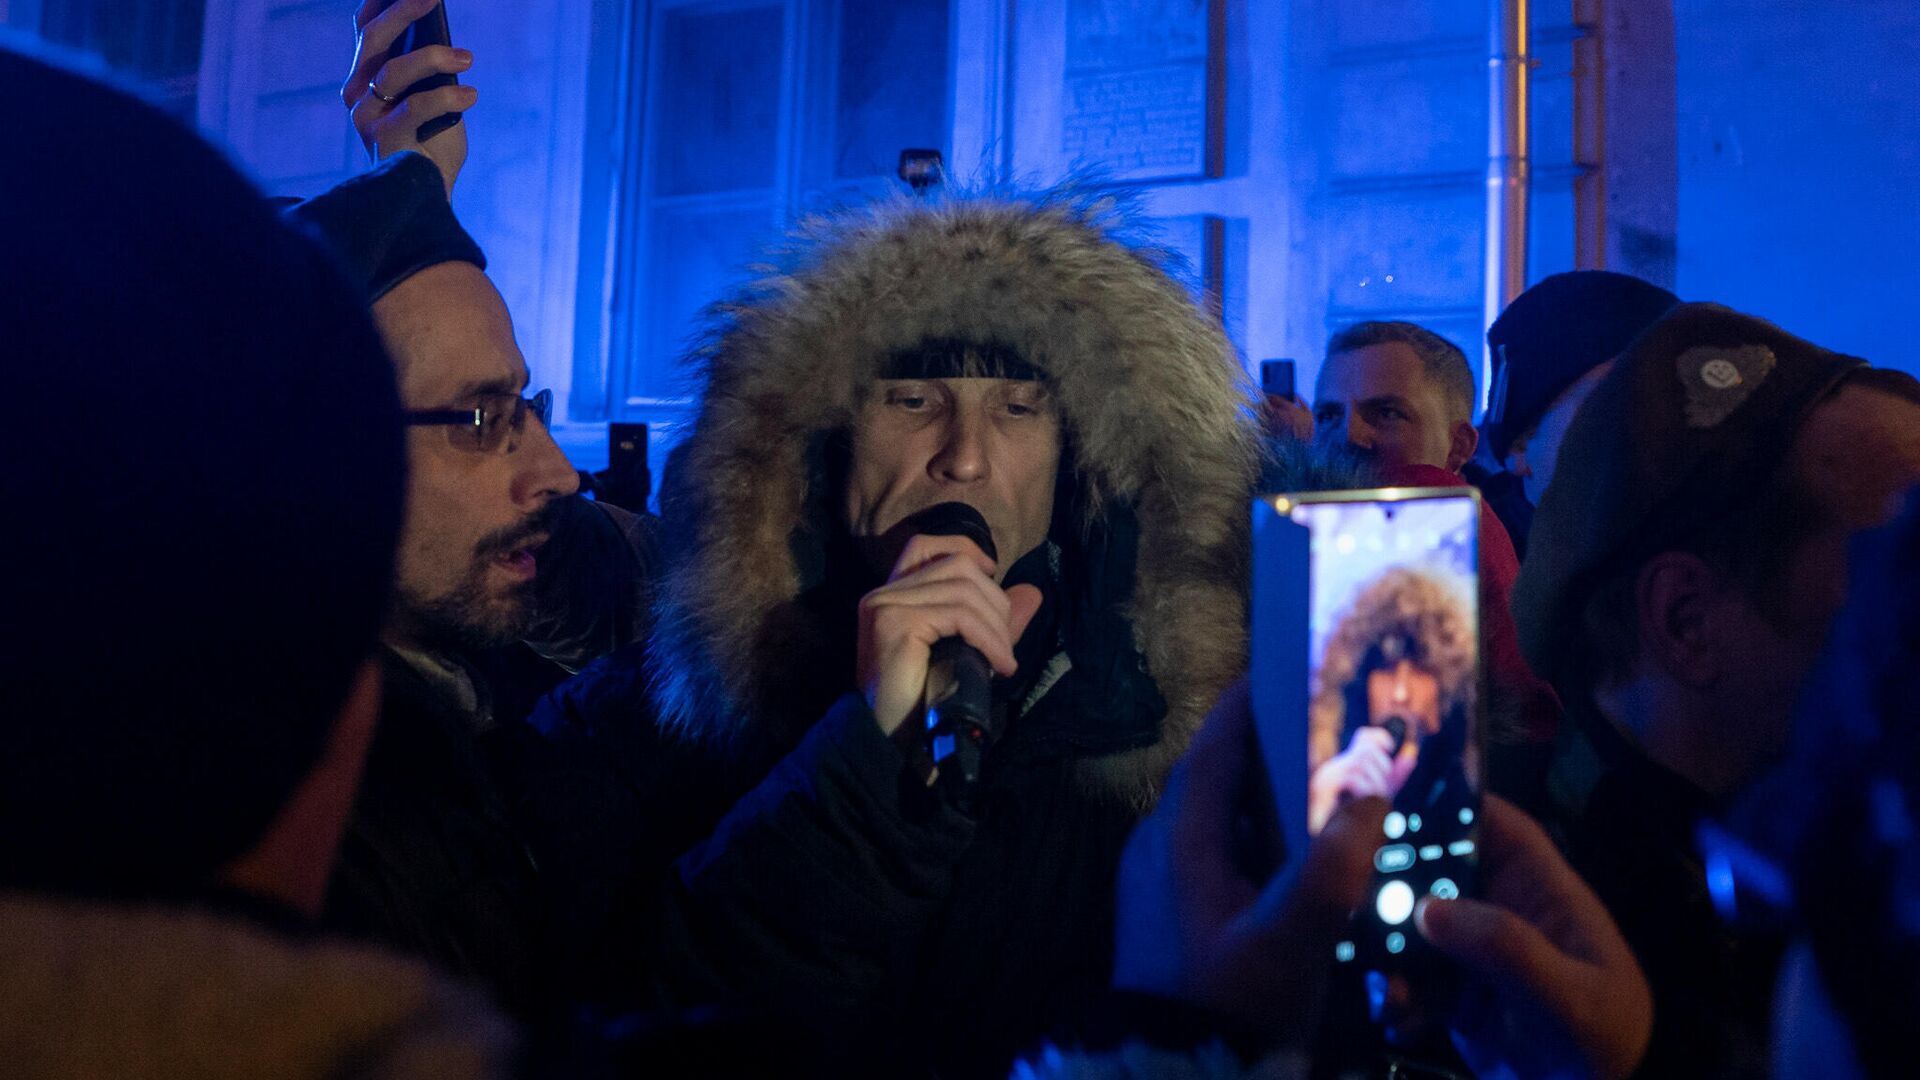 Алдис Гобземс на организованной акции протеста, 13 декабря 2021 года  - Sputnik Латвия, 1920, 18.01.2022